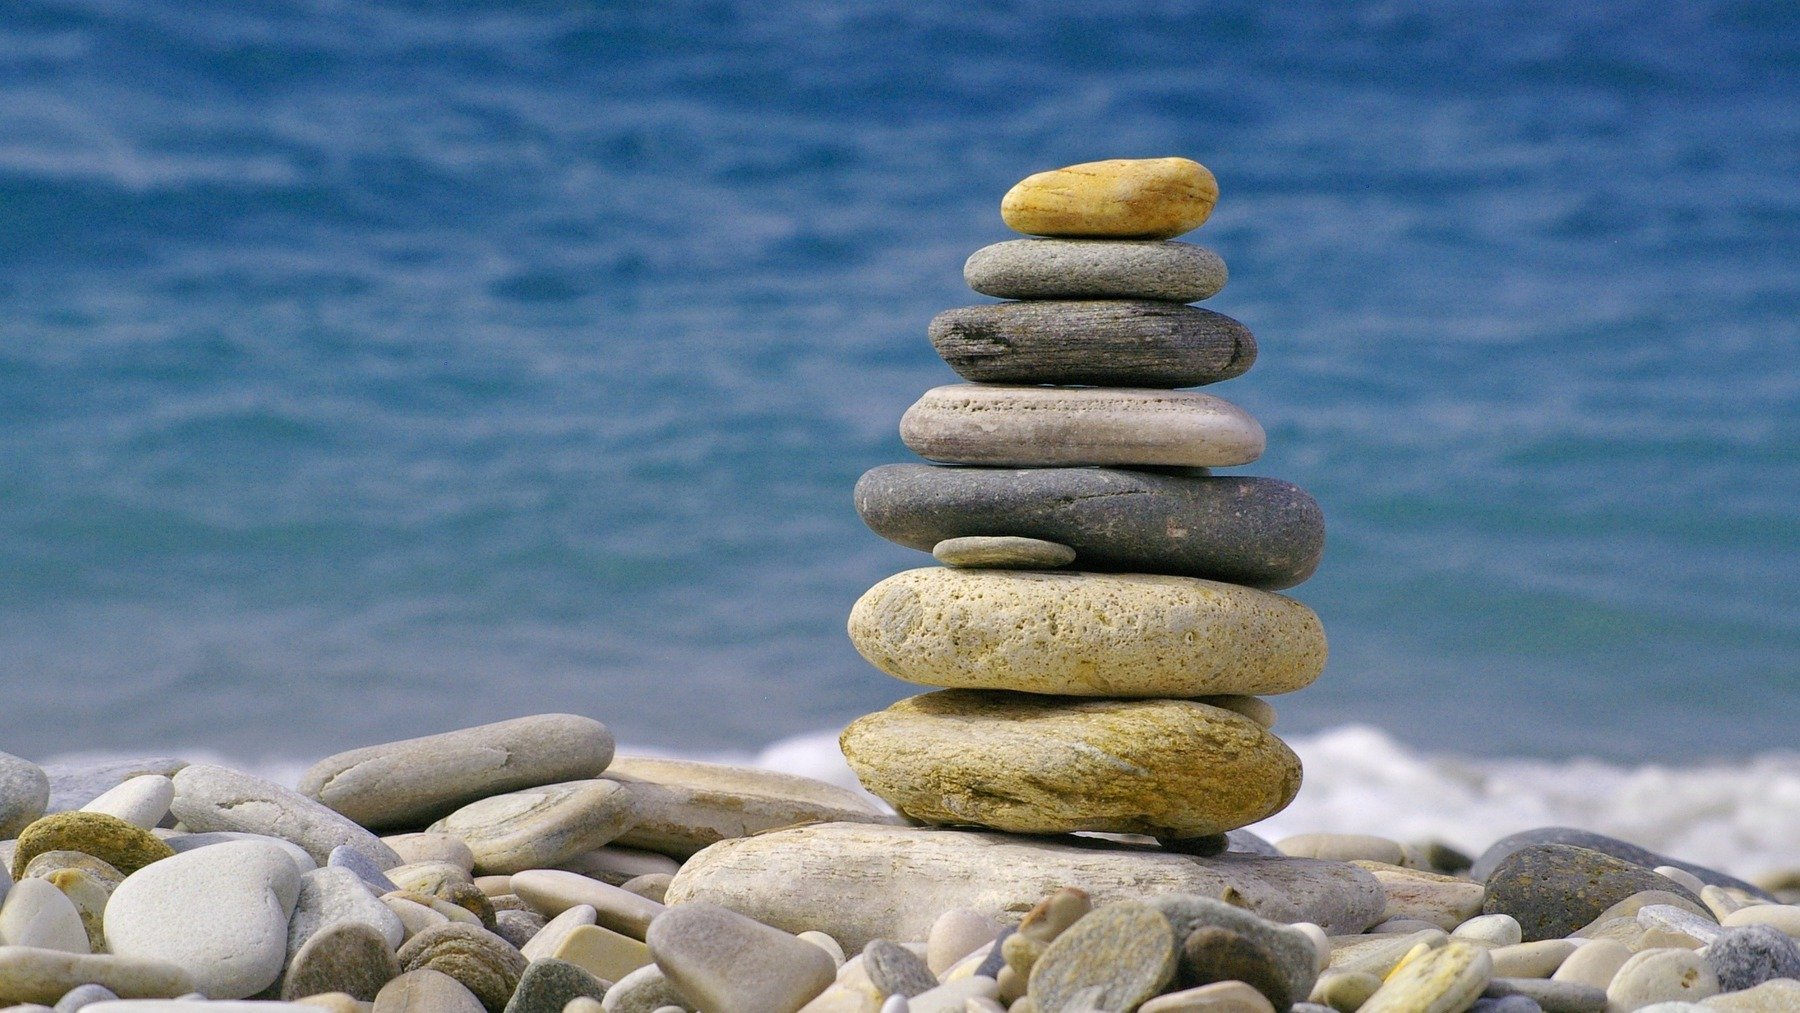 ¿Apilas las piedras cuando vas a la playa? Es muy peligroso y te explicamos por qué